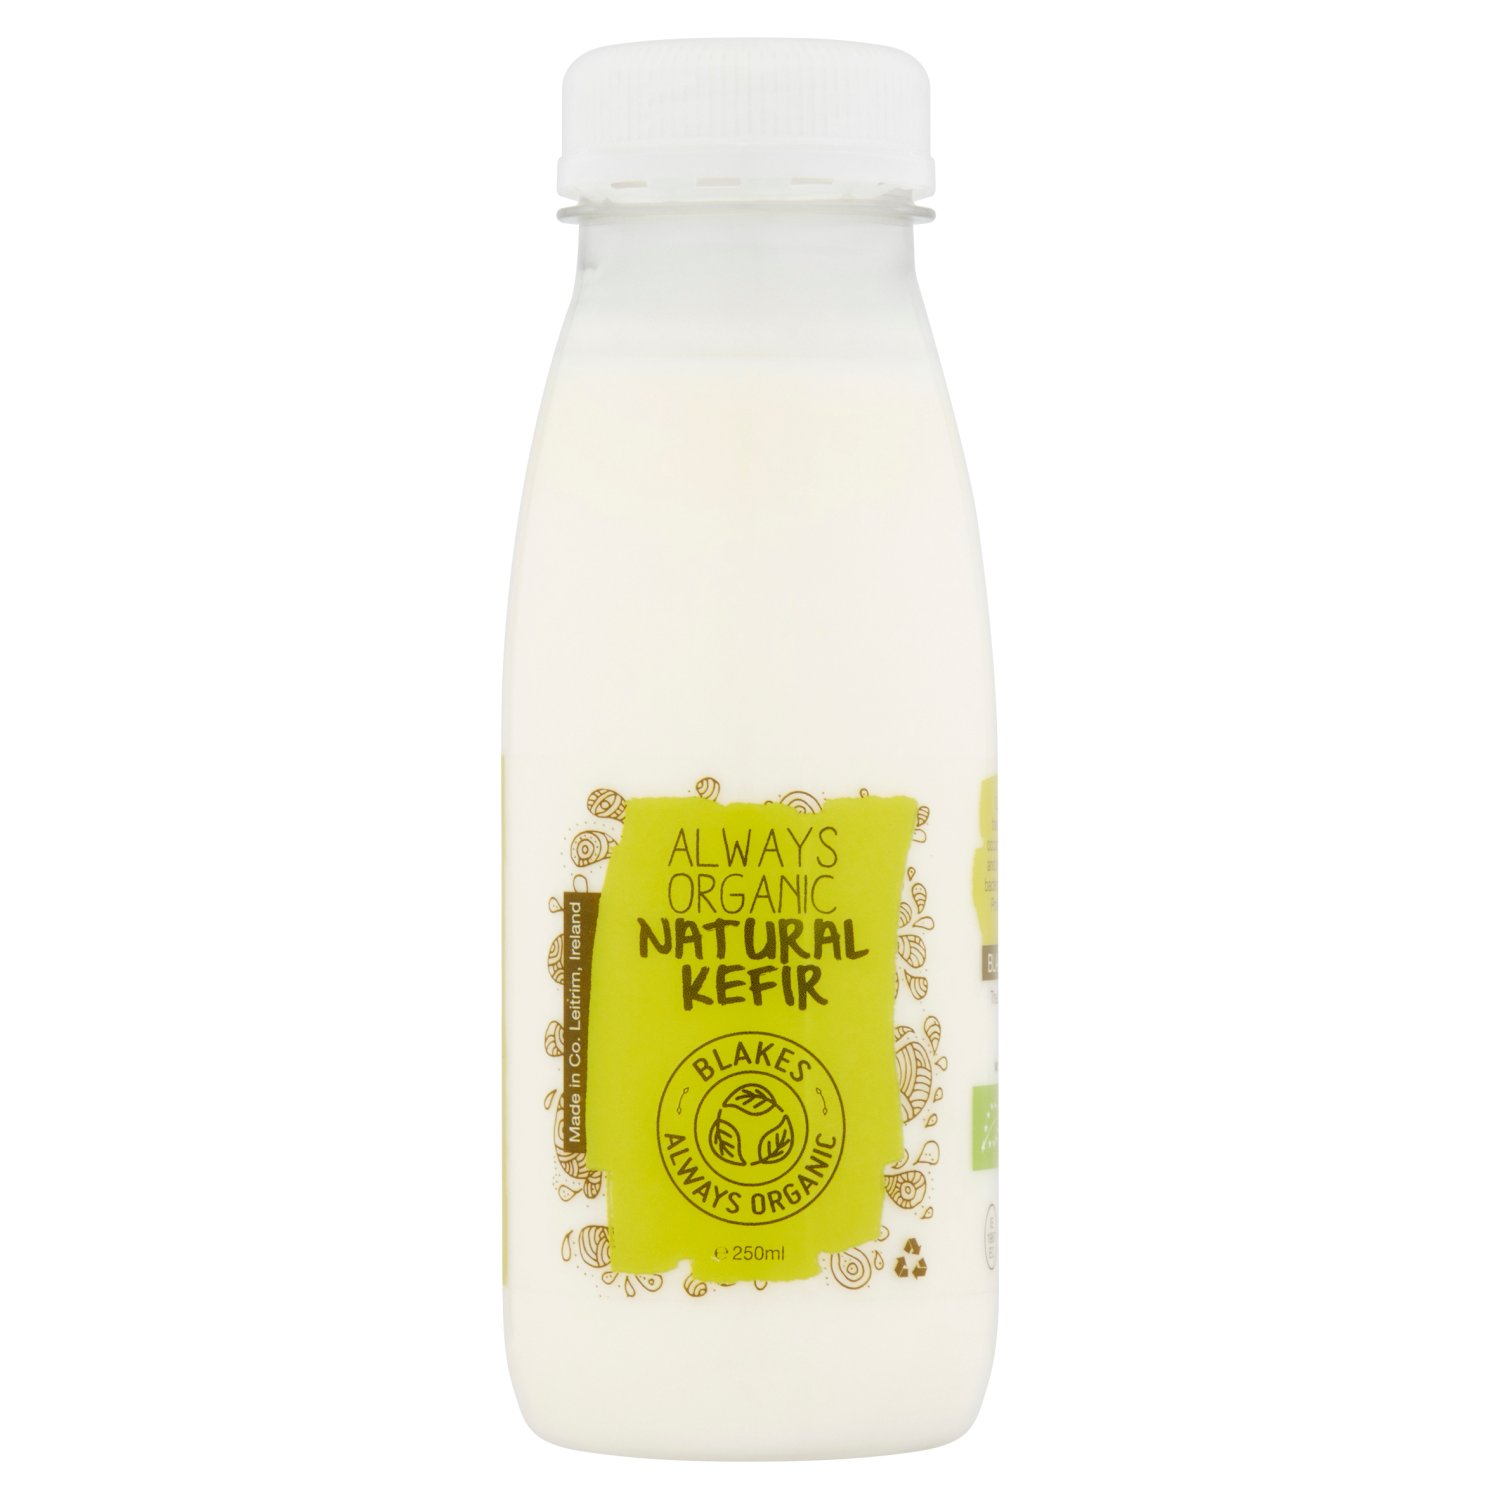 Blakes Always Organic Natural Kefir (250 ml)